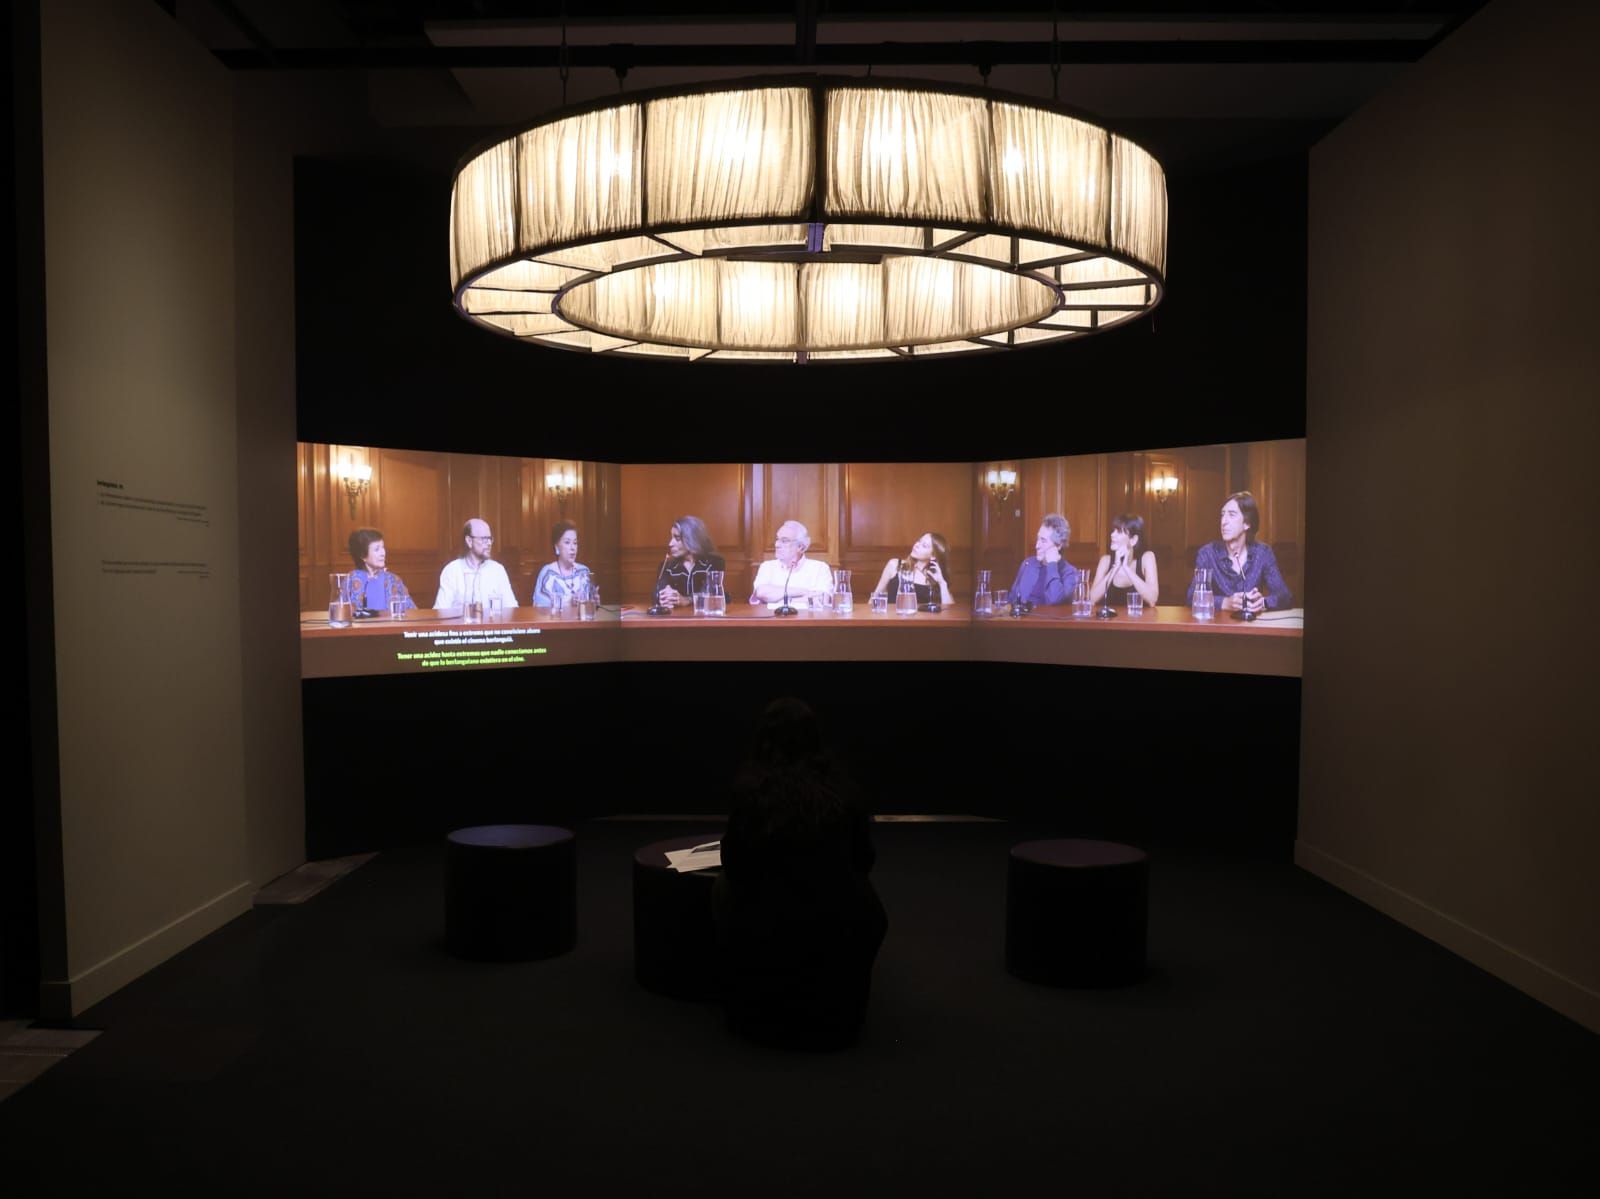 CaixaForum inaugura la exposición "Interior Berlanga"